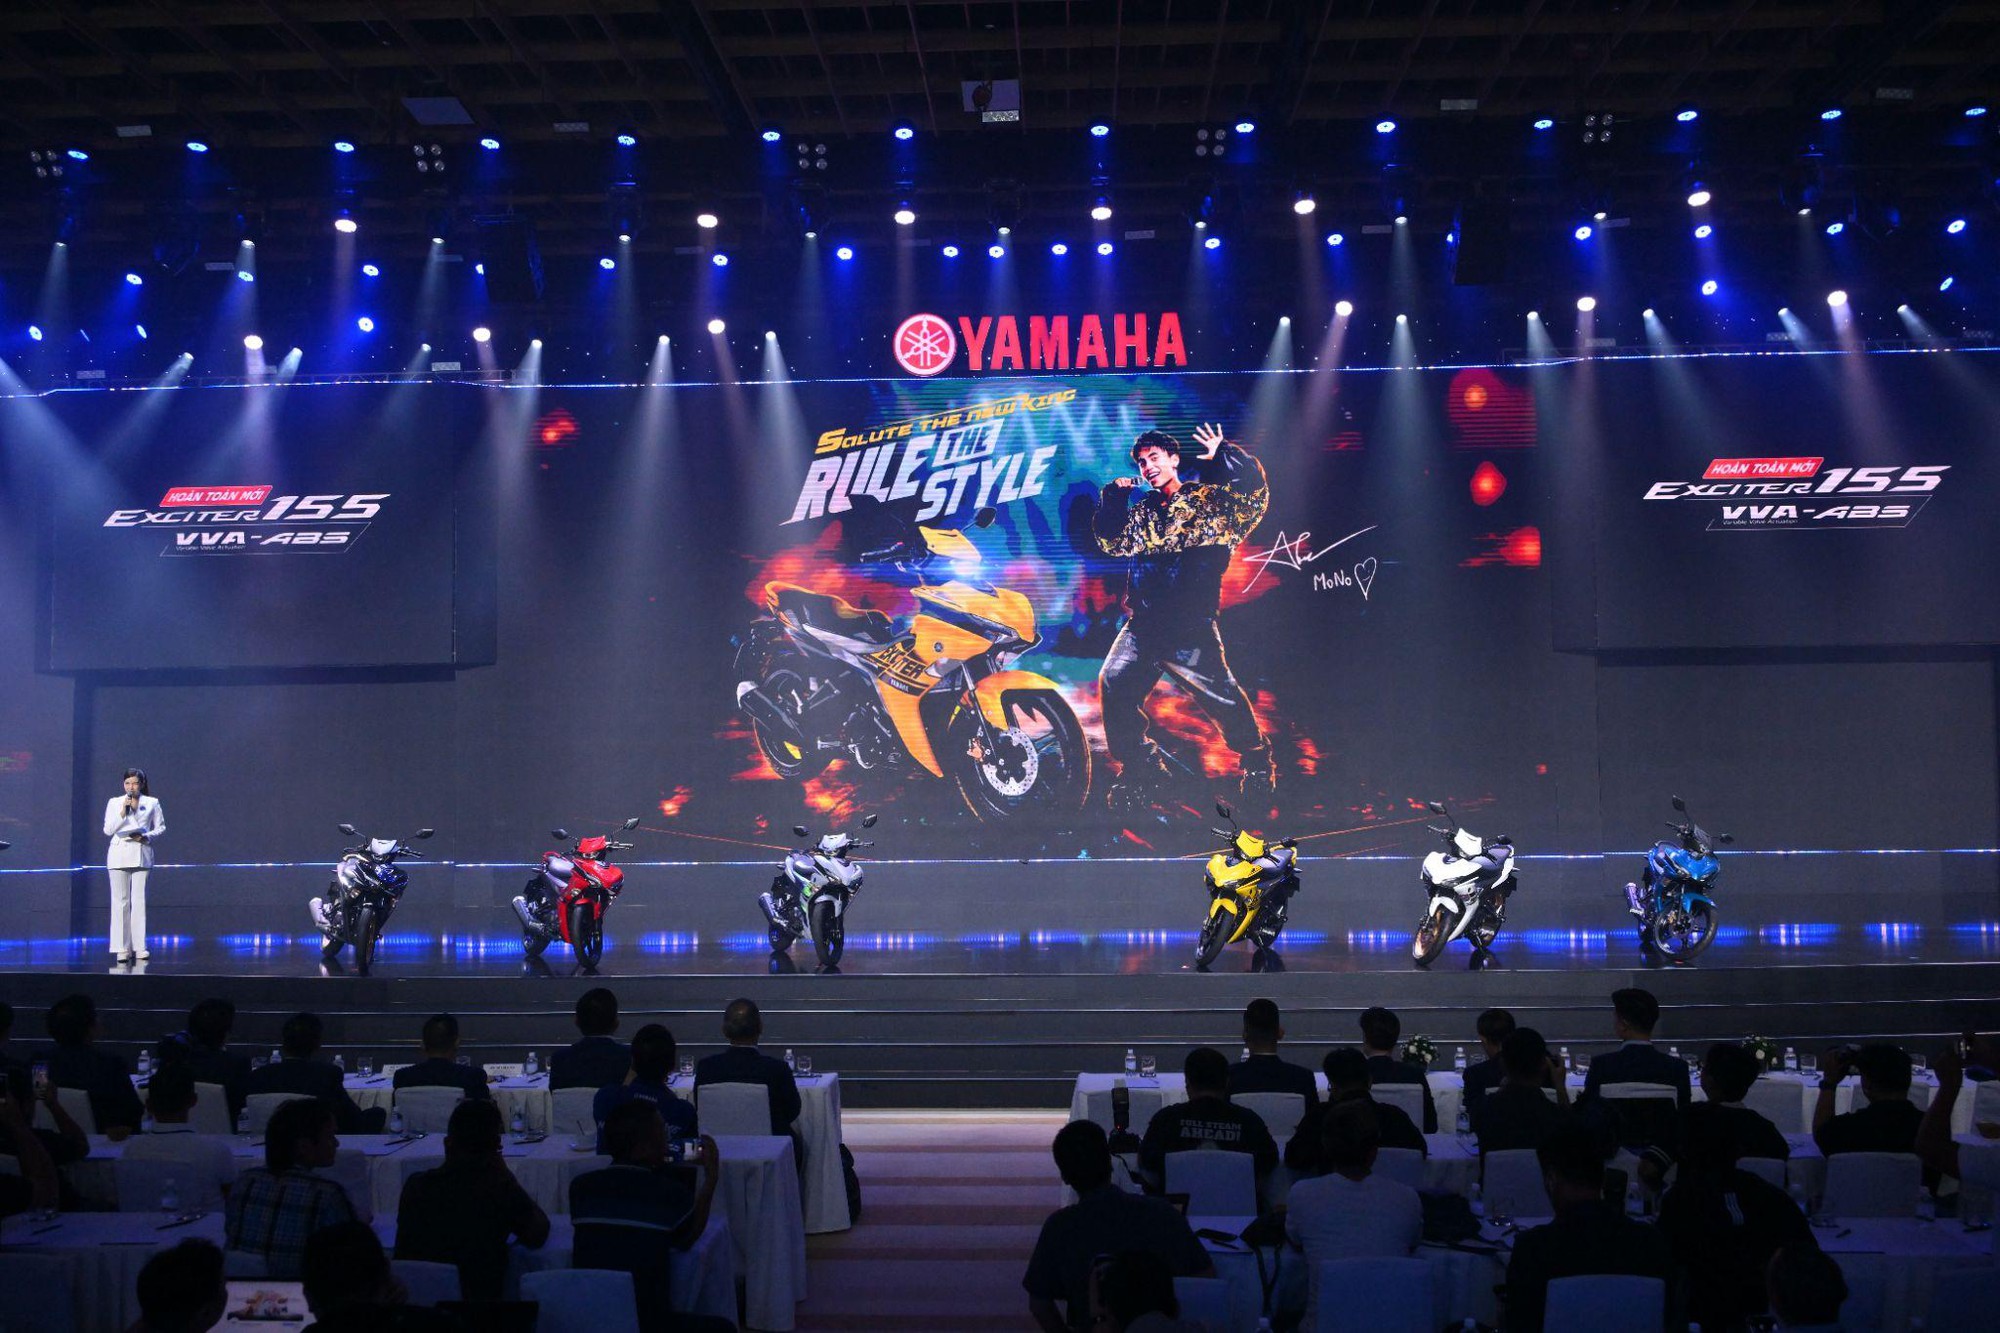 Yamaha Exciter 155 VVA - ABS 2023 với thiết kế thay đổi toàn diện trước cơ hội tiếp tục dẫn đầu phân khúc underbone côn tay tại Việt Nam - Ảnh 1.